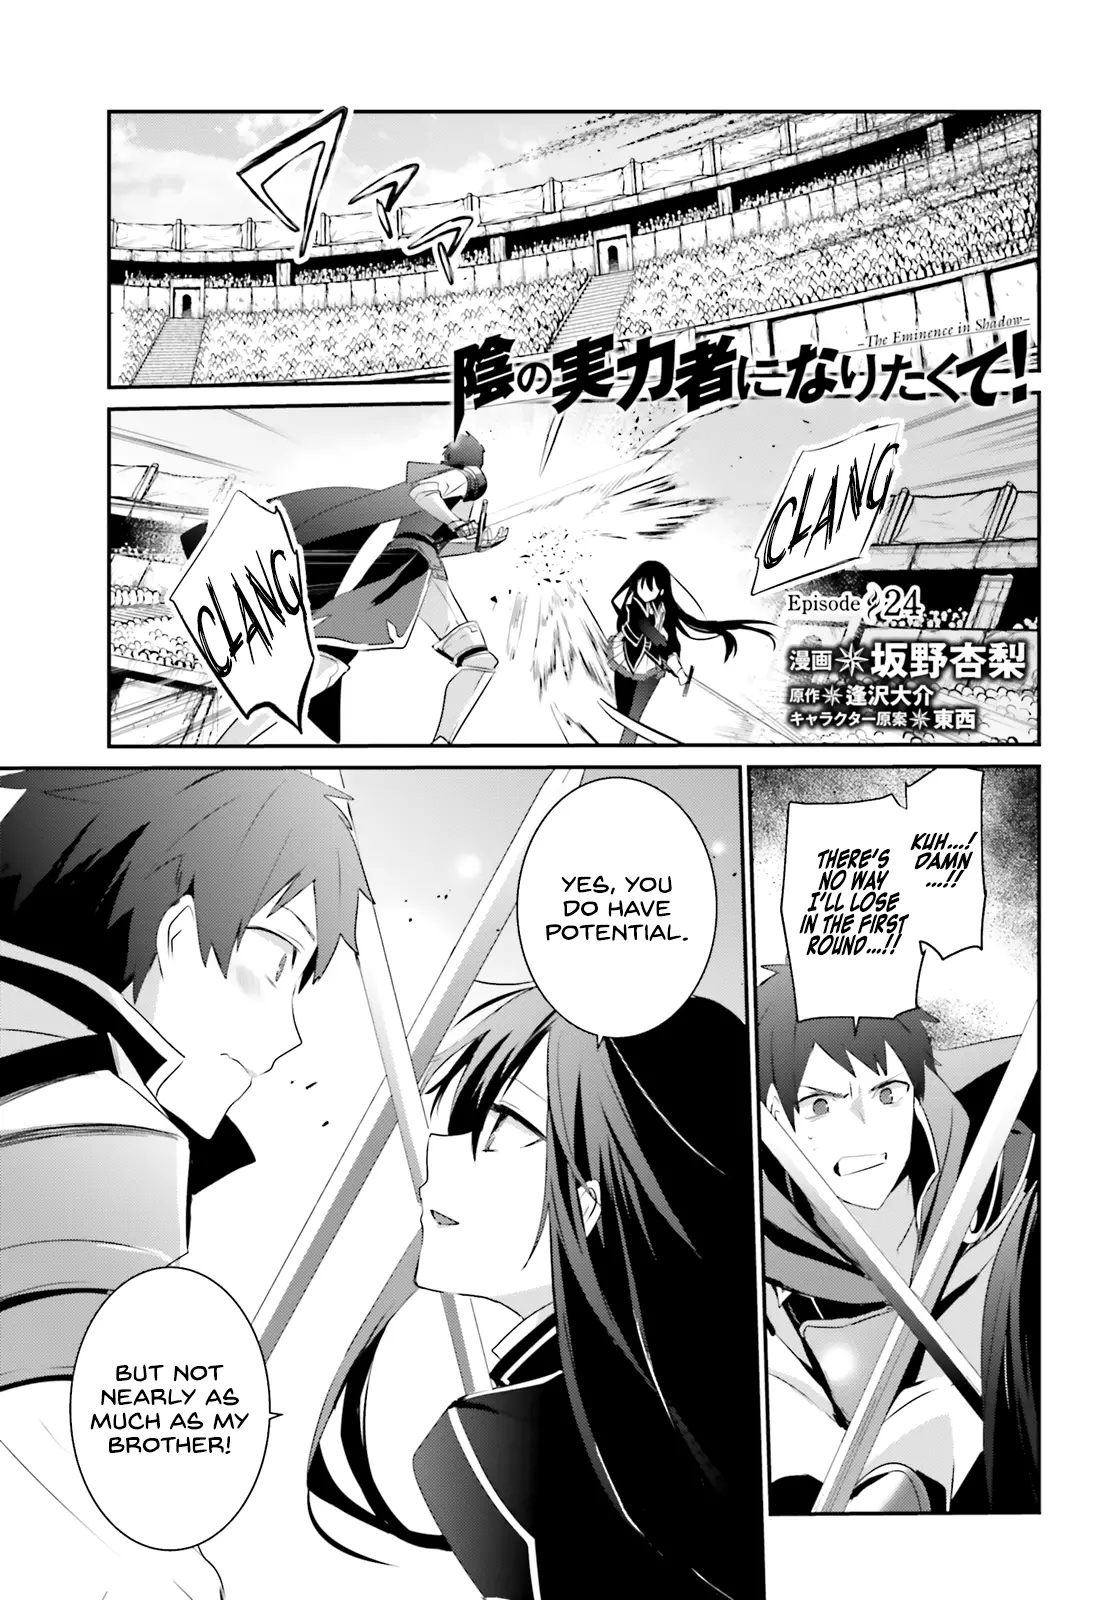 Kage No Jitsuryokusha Ni Naritakute! Shadow Gaiden - 24 page 2